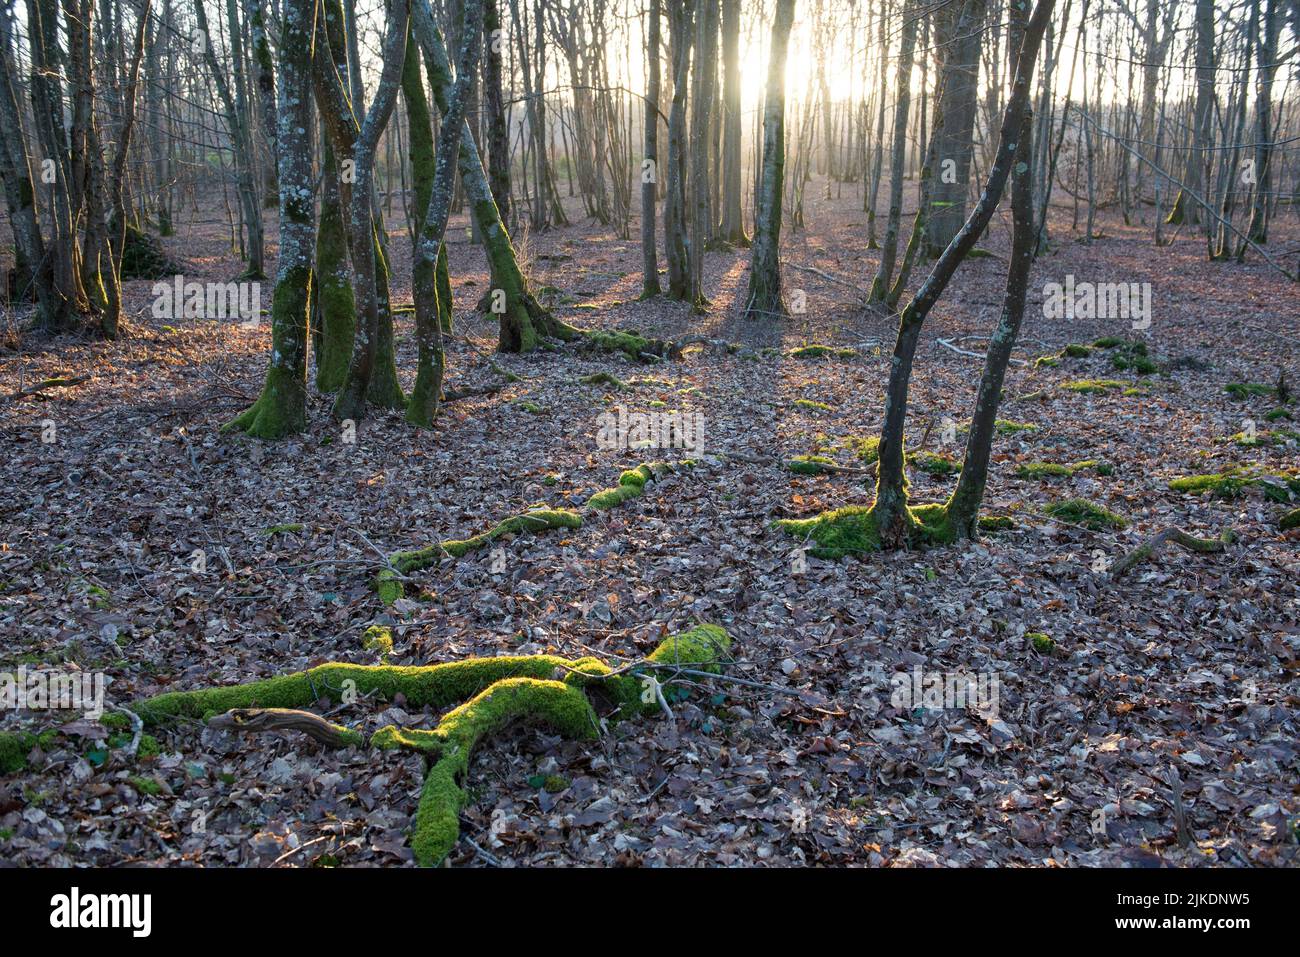 Bosque de carpe en la Selva de Rambouillet, Parque Natural Regional de Haute Vallée de Chevreuse, departamento de Yvelines, región de Isla de Francia, Francia, Foto de stock